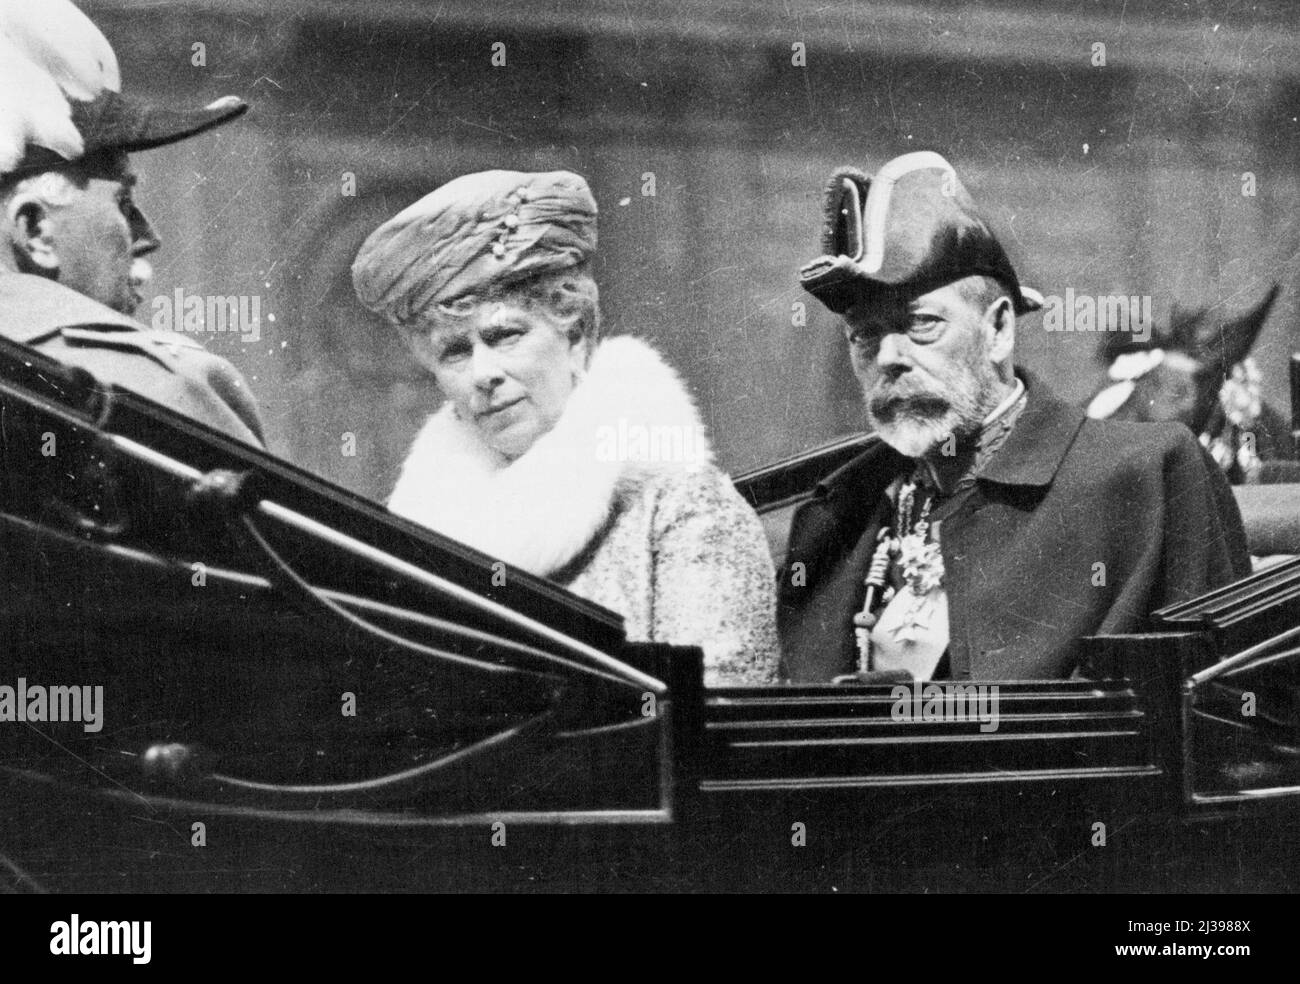 Incidenti nella vita della regina Maria - re Giorgio V e la regina Maria guideranno all'Abbazia di Westminster per la cerimonia dei cavalieri di San Giovanni nel maggio 1928. Maggio 1, 1928. (Foto di Fox Photos). Foto Stock